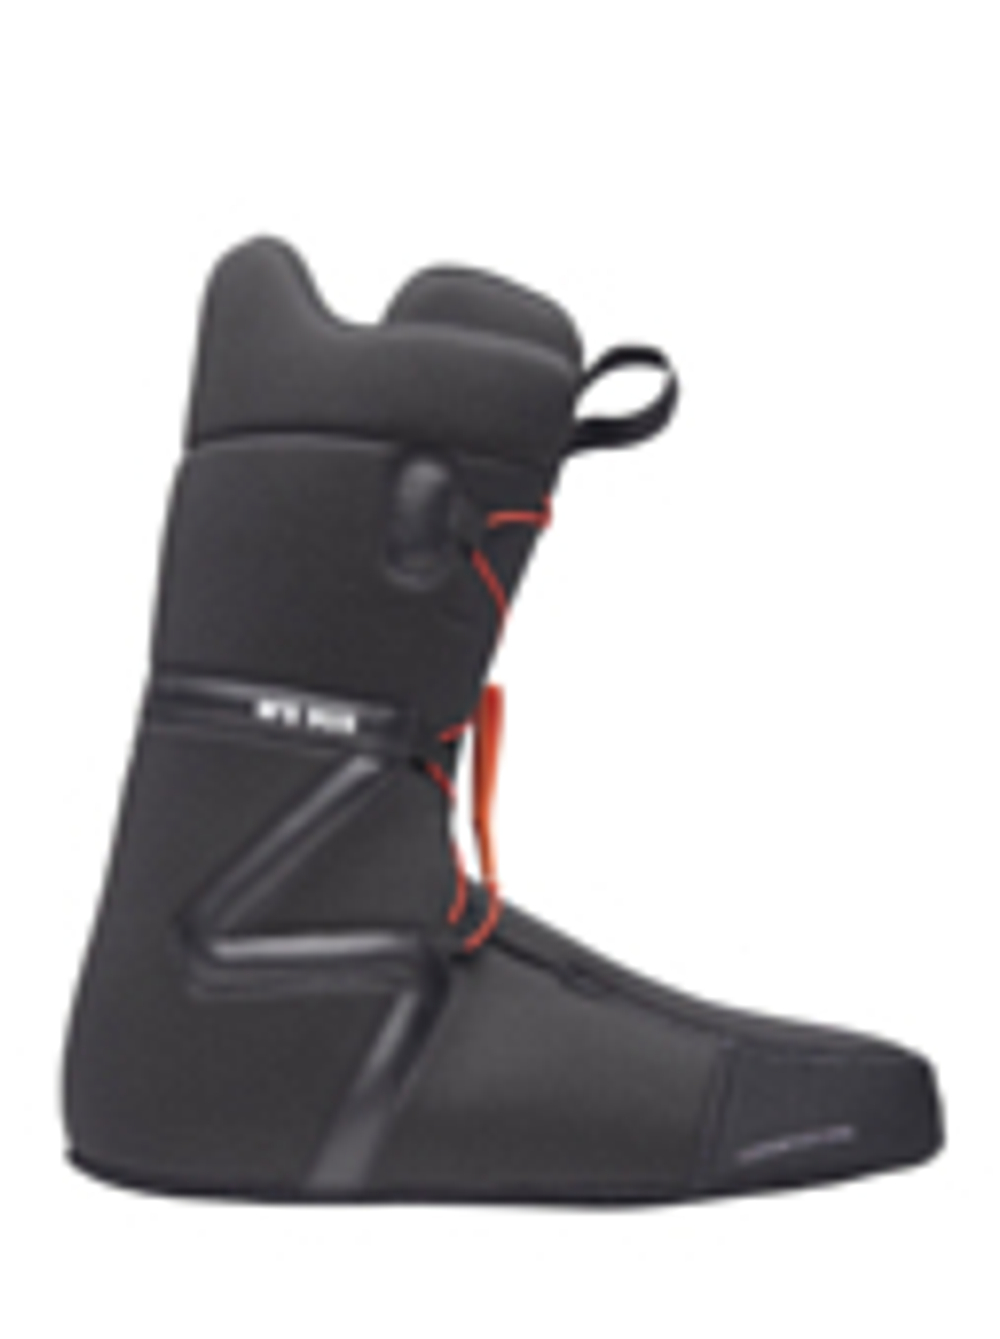 Ботинки для сноуборда NIDECKER 2023-24 Sierra Black (US:11)